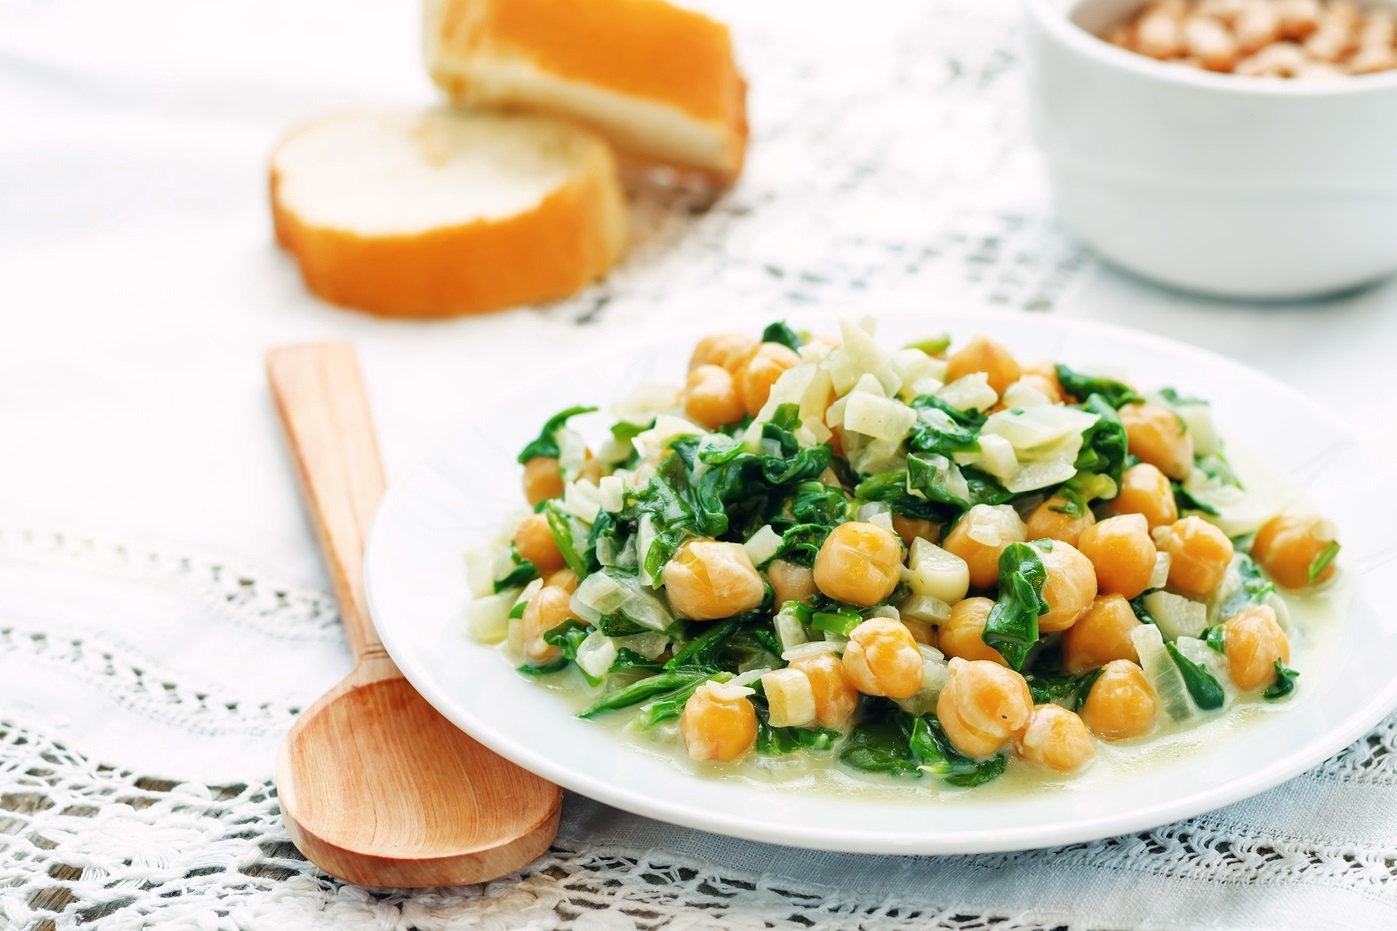 Garlicky Greek Chickpeas & Spinach Recipe - vegan, gluten-free and allergy-friendly!